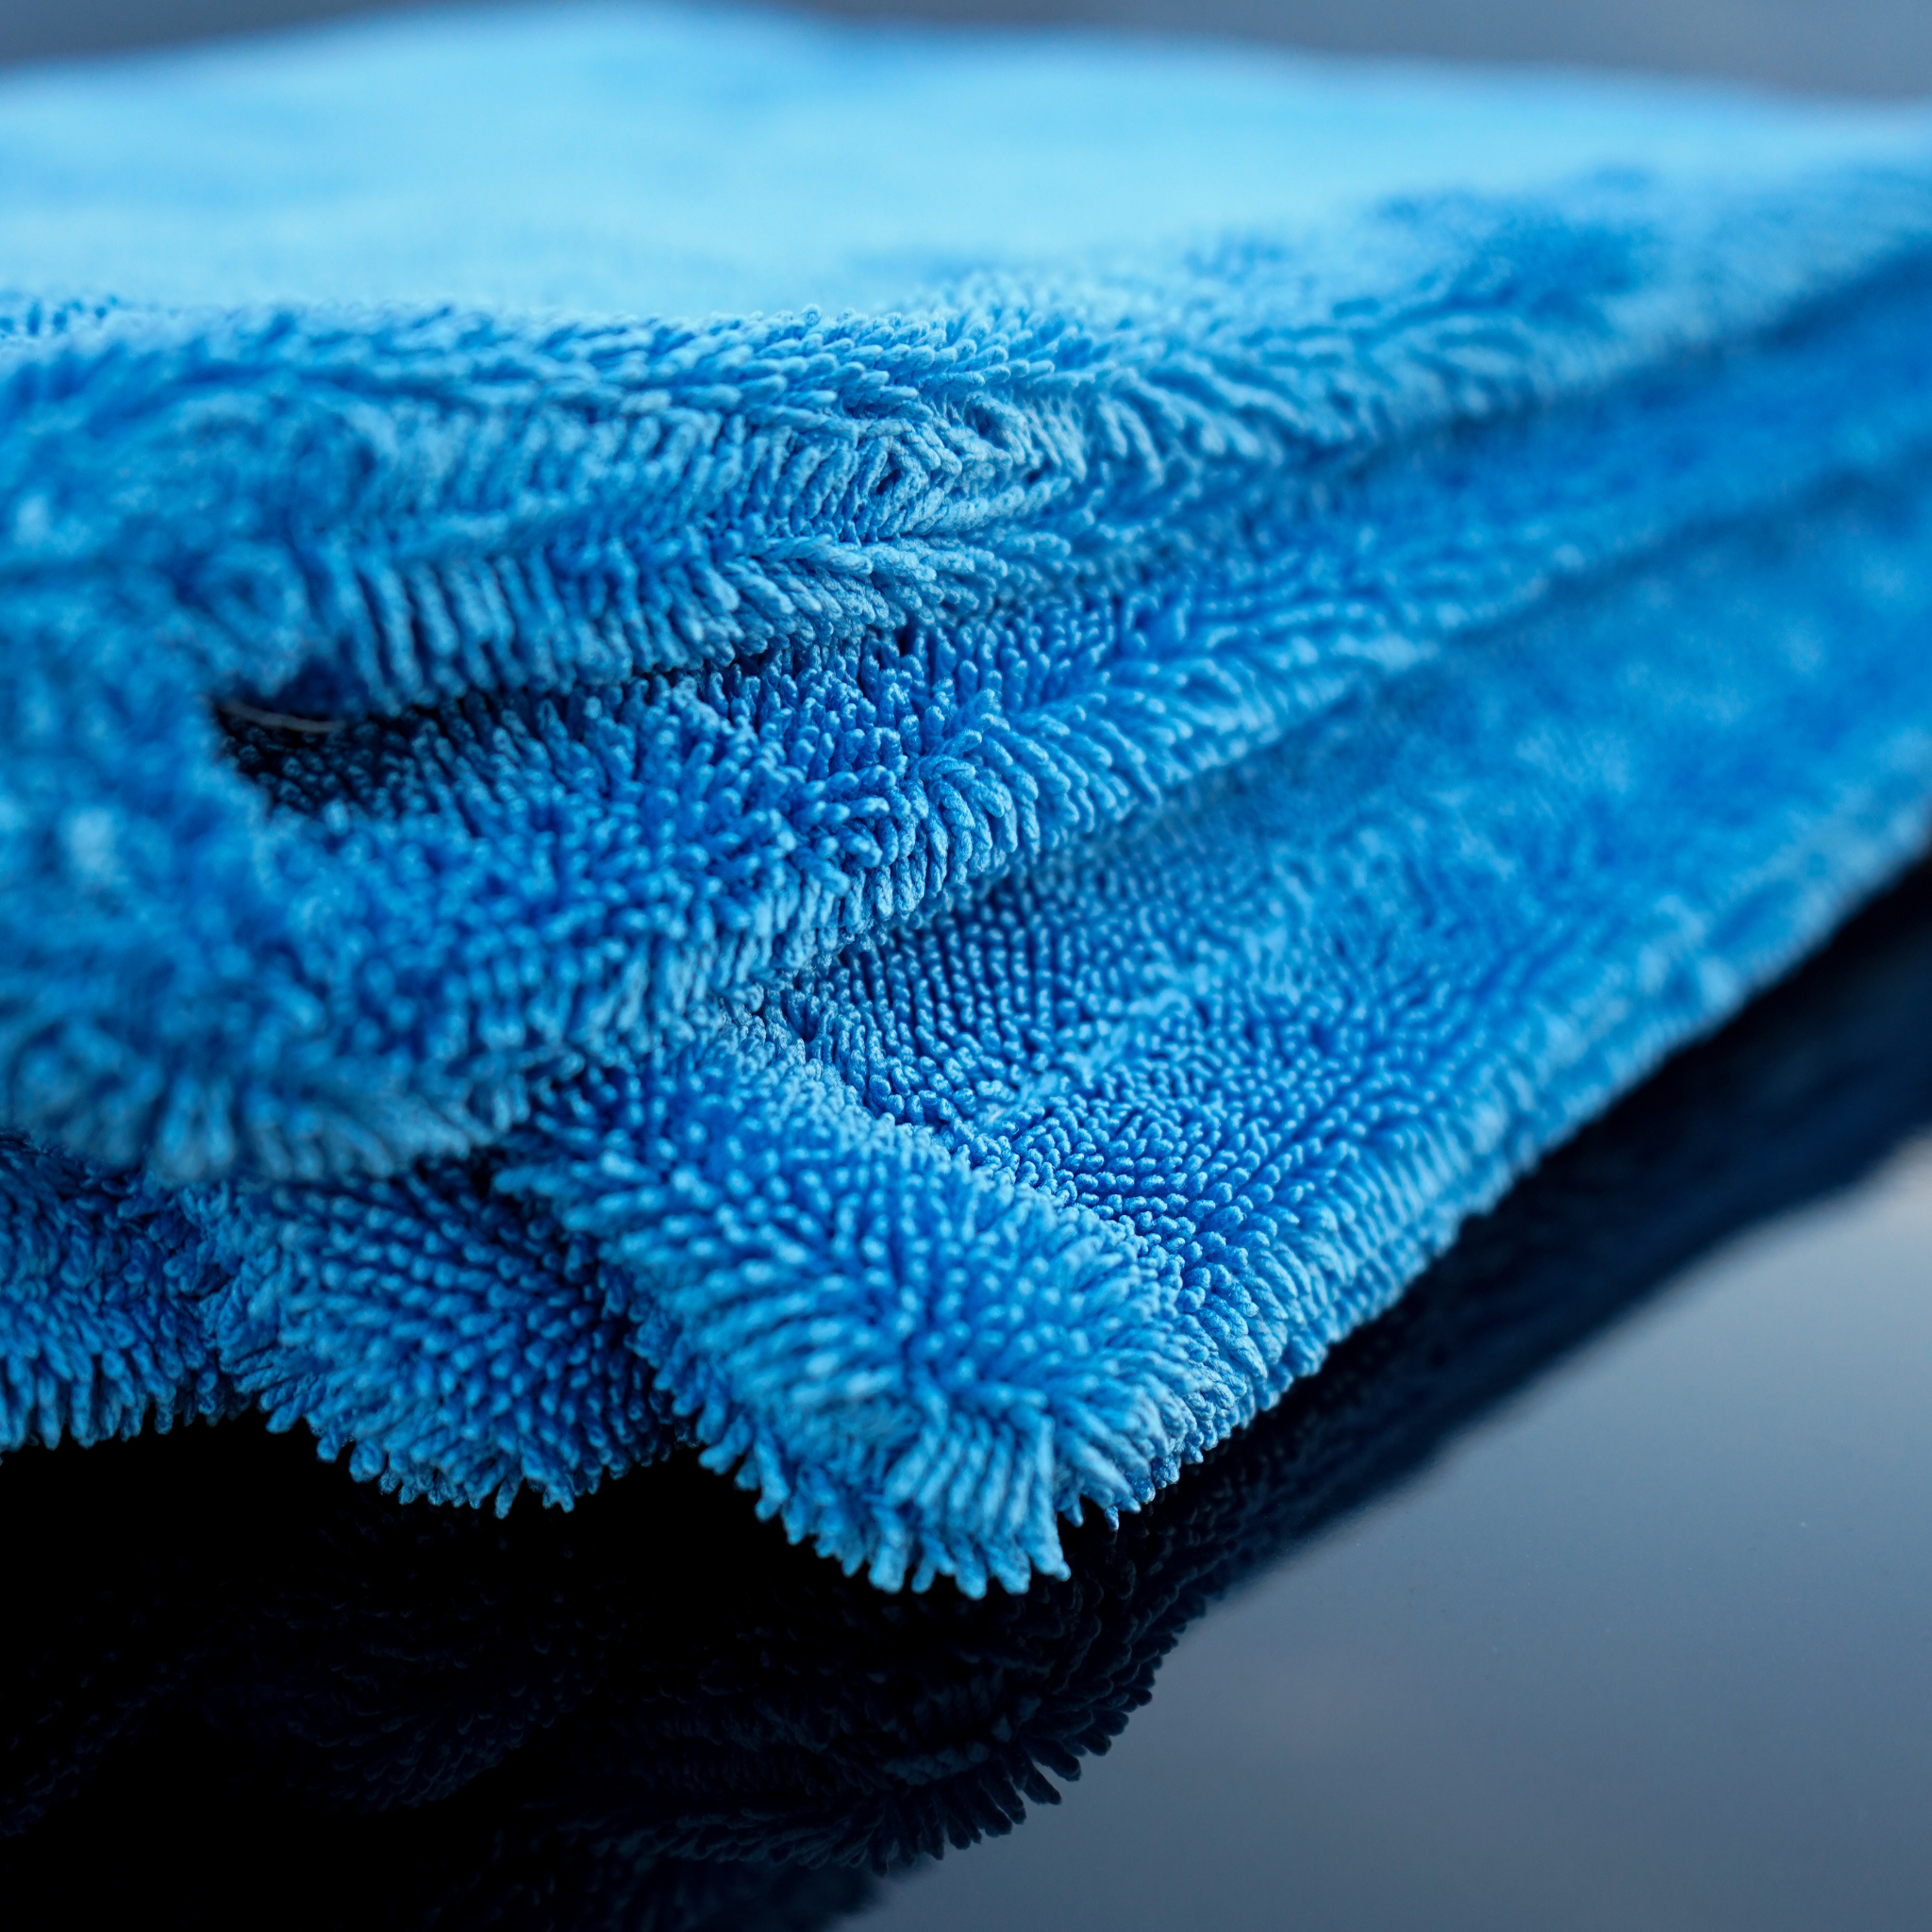 Toalla de secado Shiny garage Extreme Drying Towel